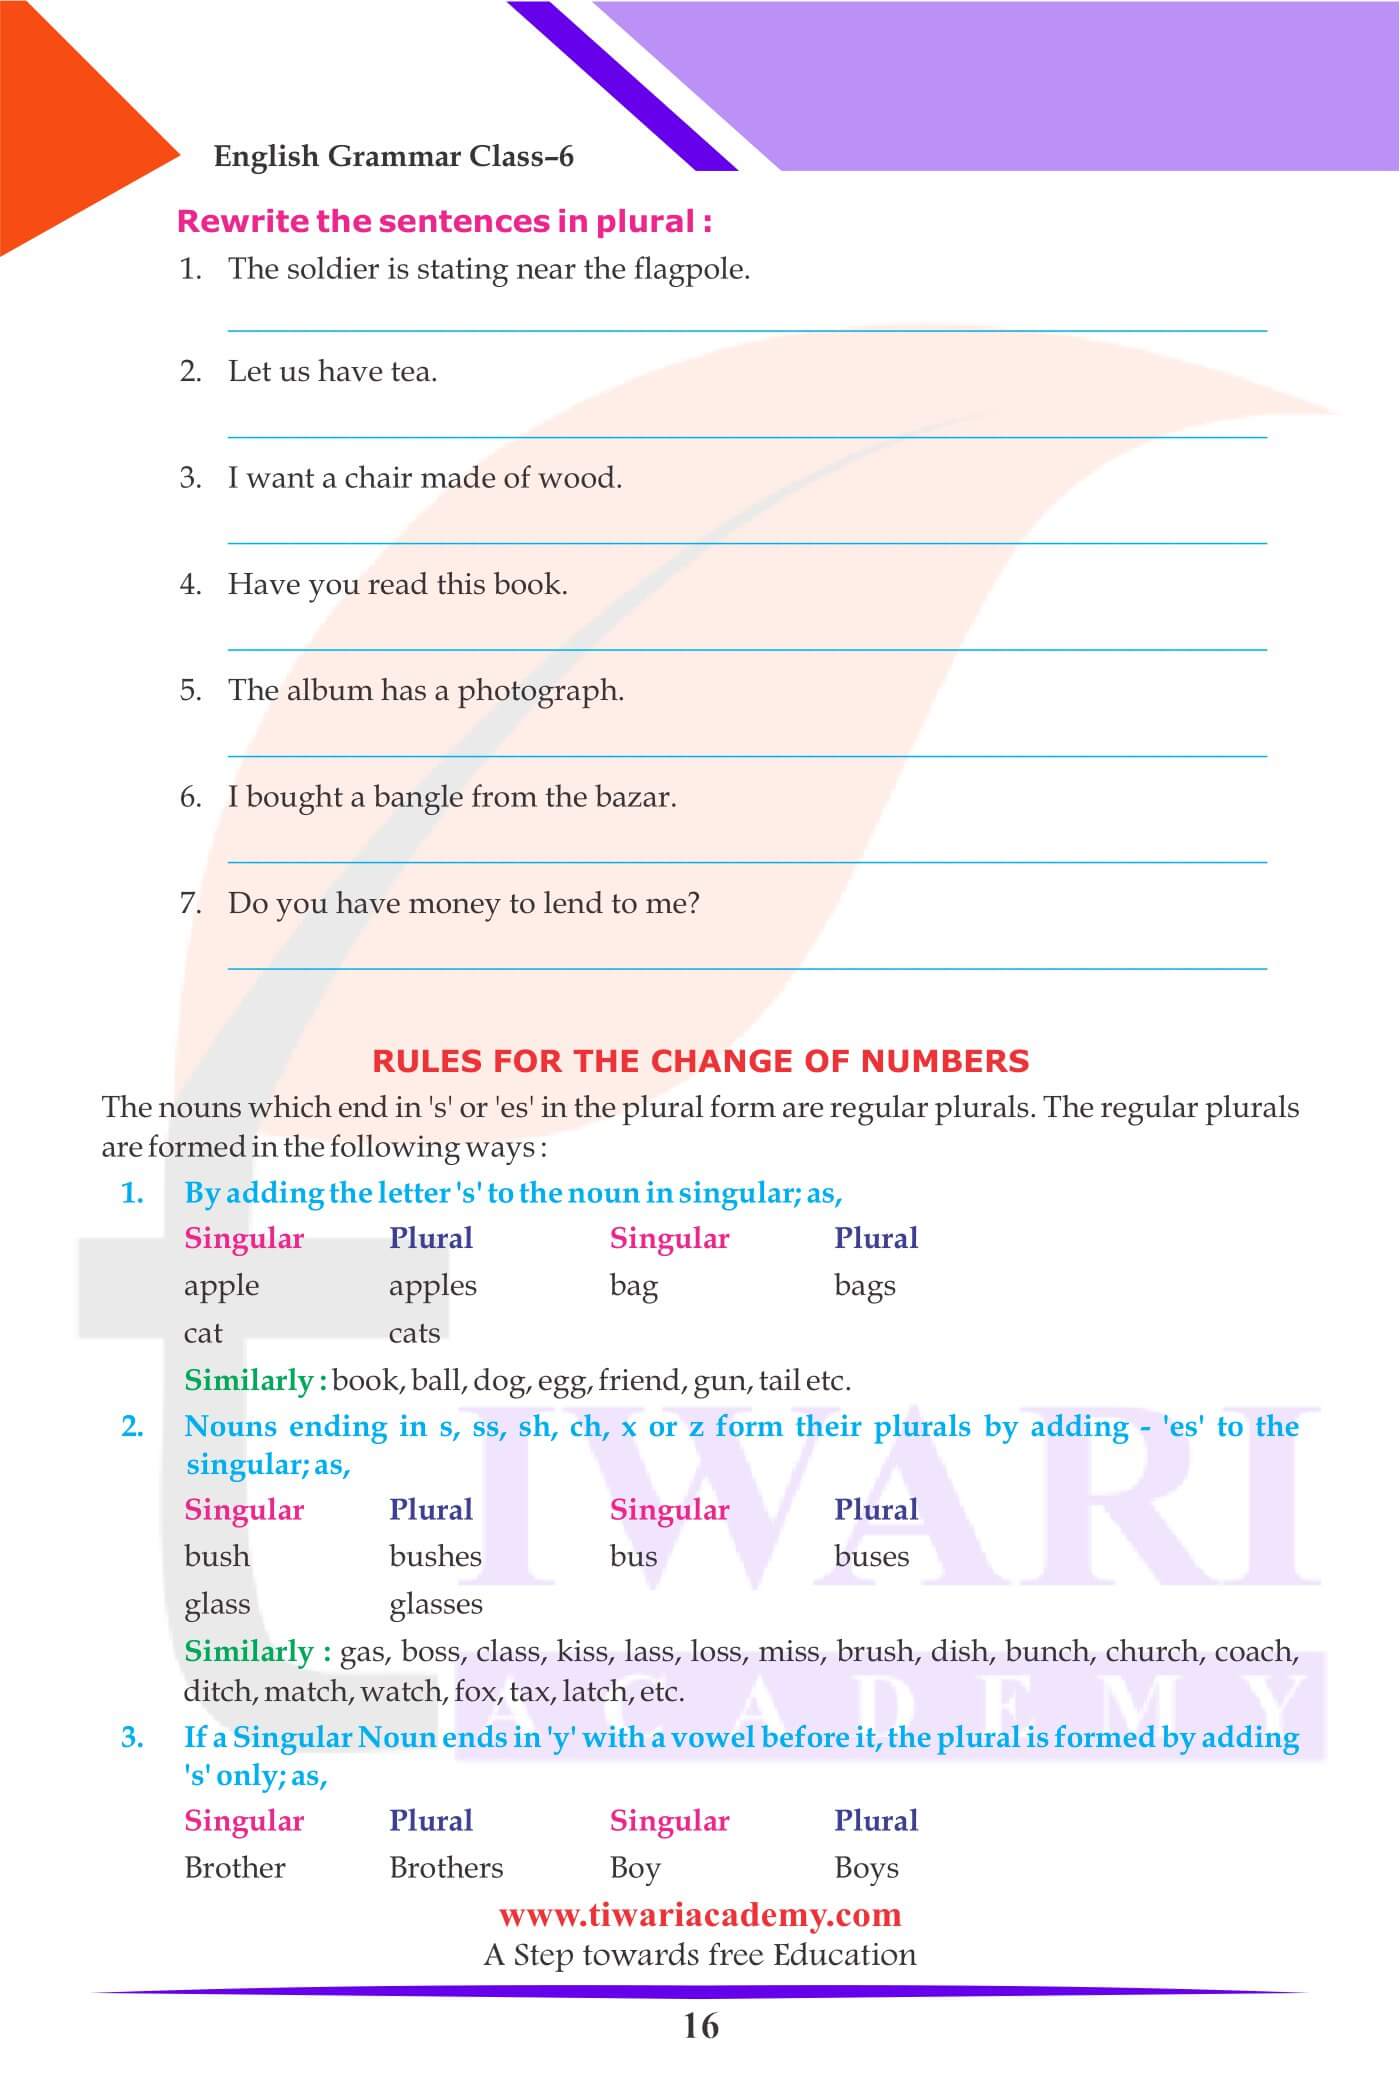 Class 6 English Grammar The Noun Numbers